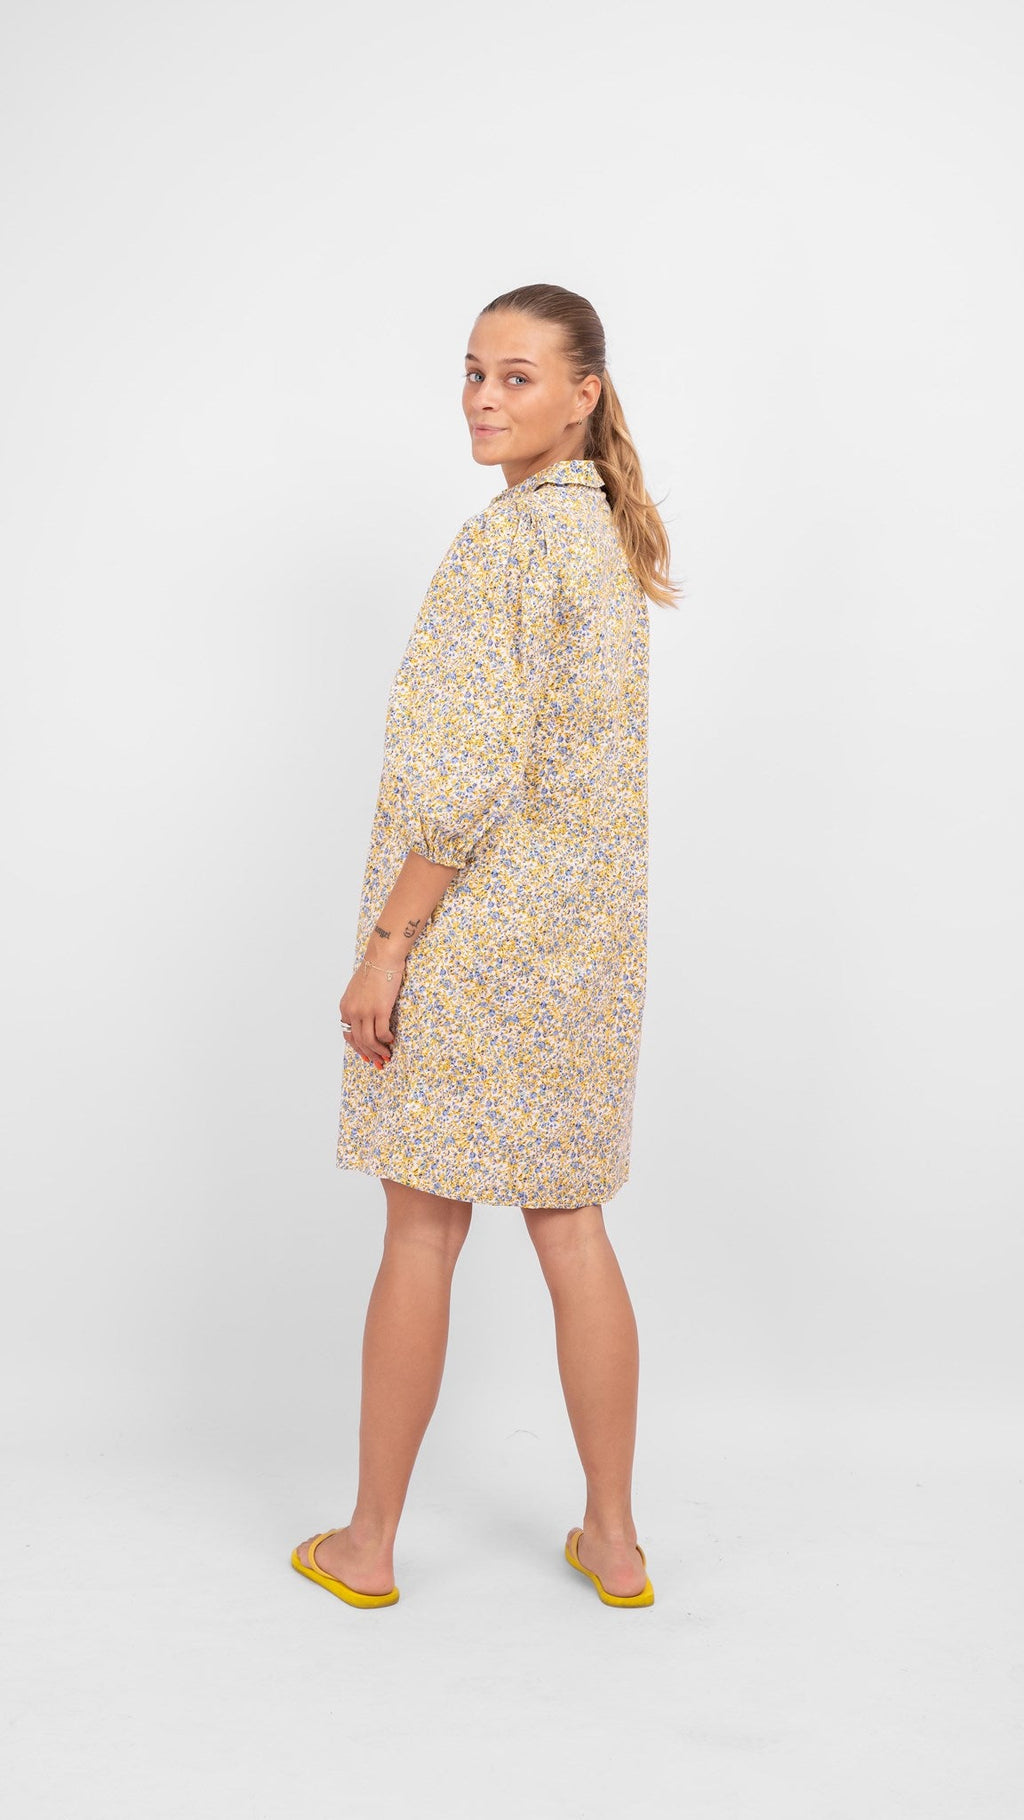 SOFIE衬衫连衣裙 - 蓝色和黄色花卉